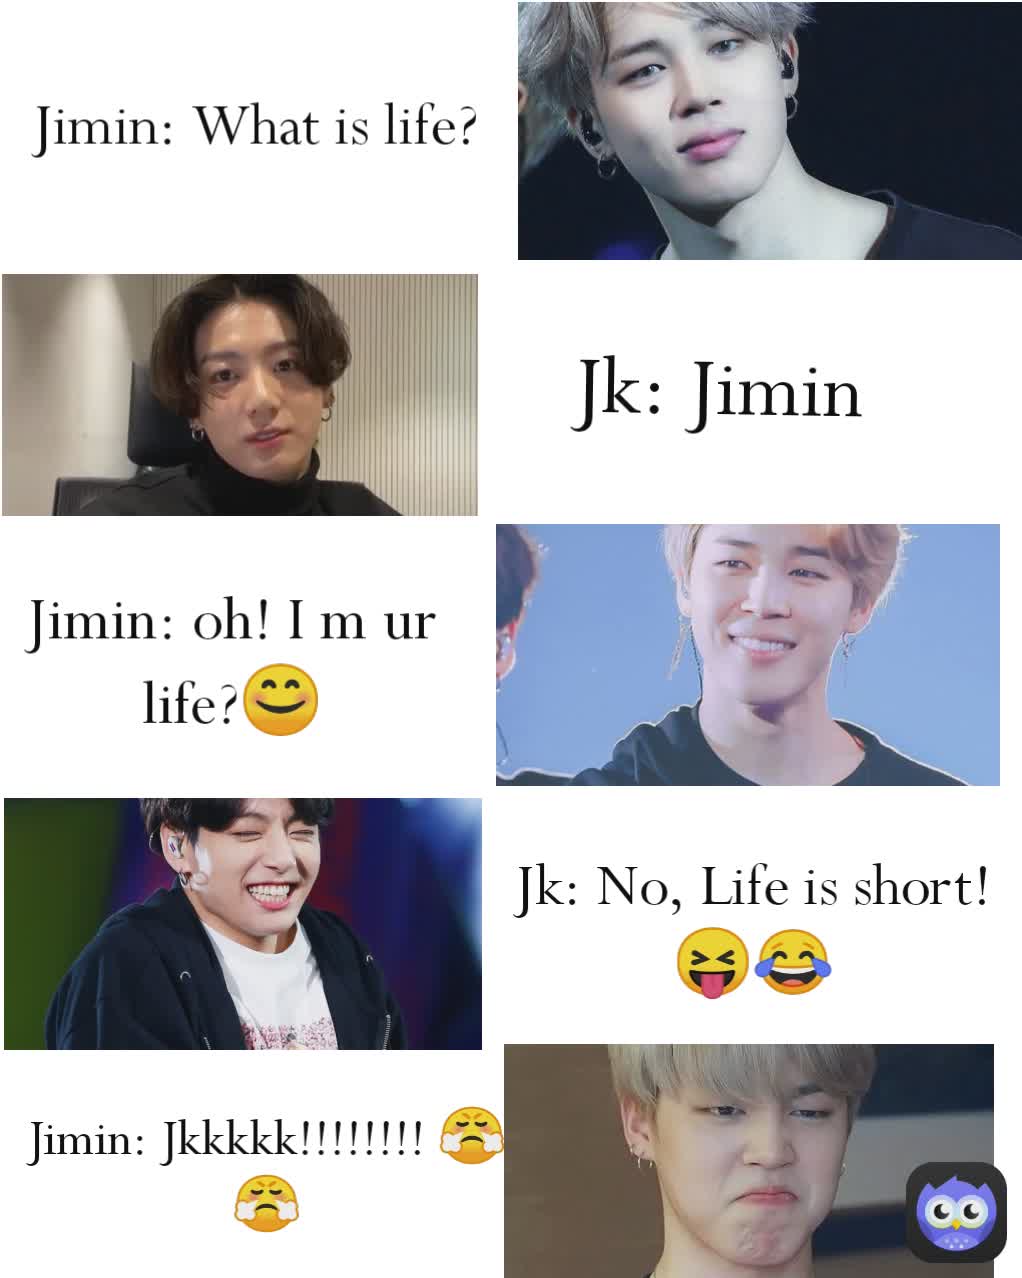 Jk: Jimin Jimin: Jkkkkk!!!!!!!! 😤😤 Jimin: oh! I m ur life?😊 Jimin: What is life? Jk: No, Life is short! 😝😂